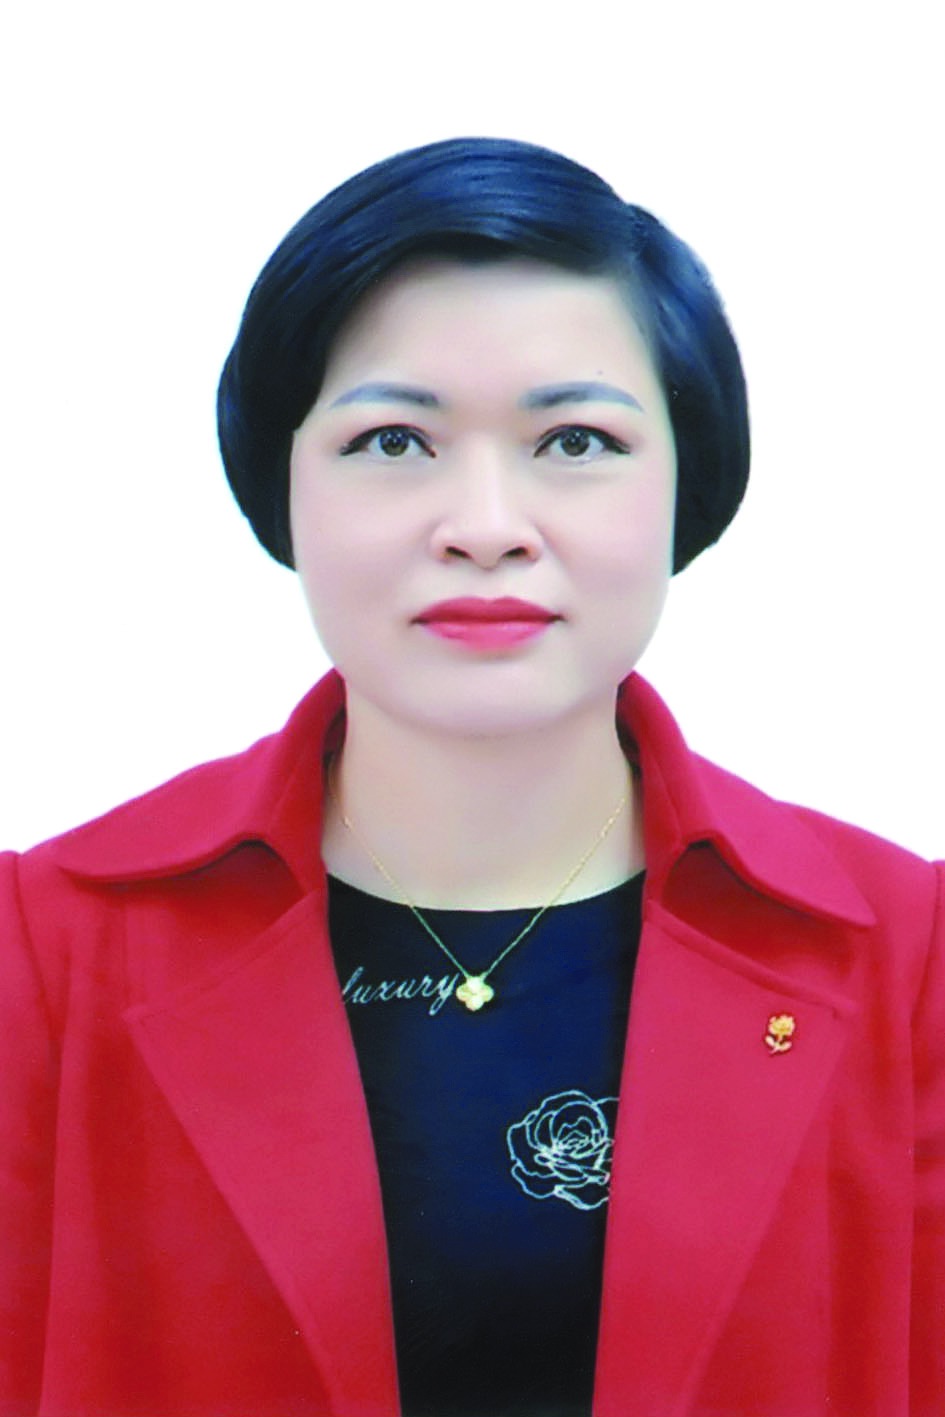 Chương trình hành động của bà Trần Thị Phương, ứng cử viên đại biểu HĐND TP Hà Nội nhiệm kỳ 2021 - 2026 - Ảnh 1